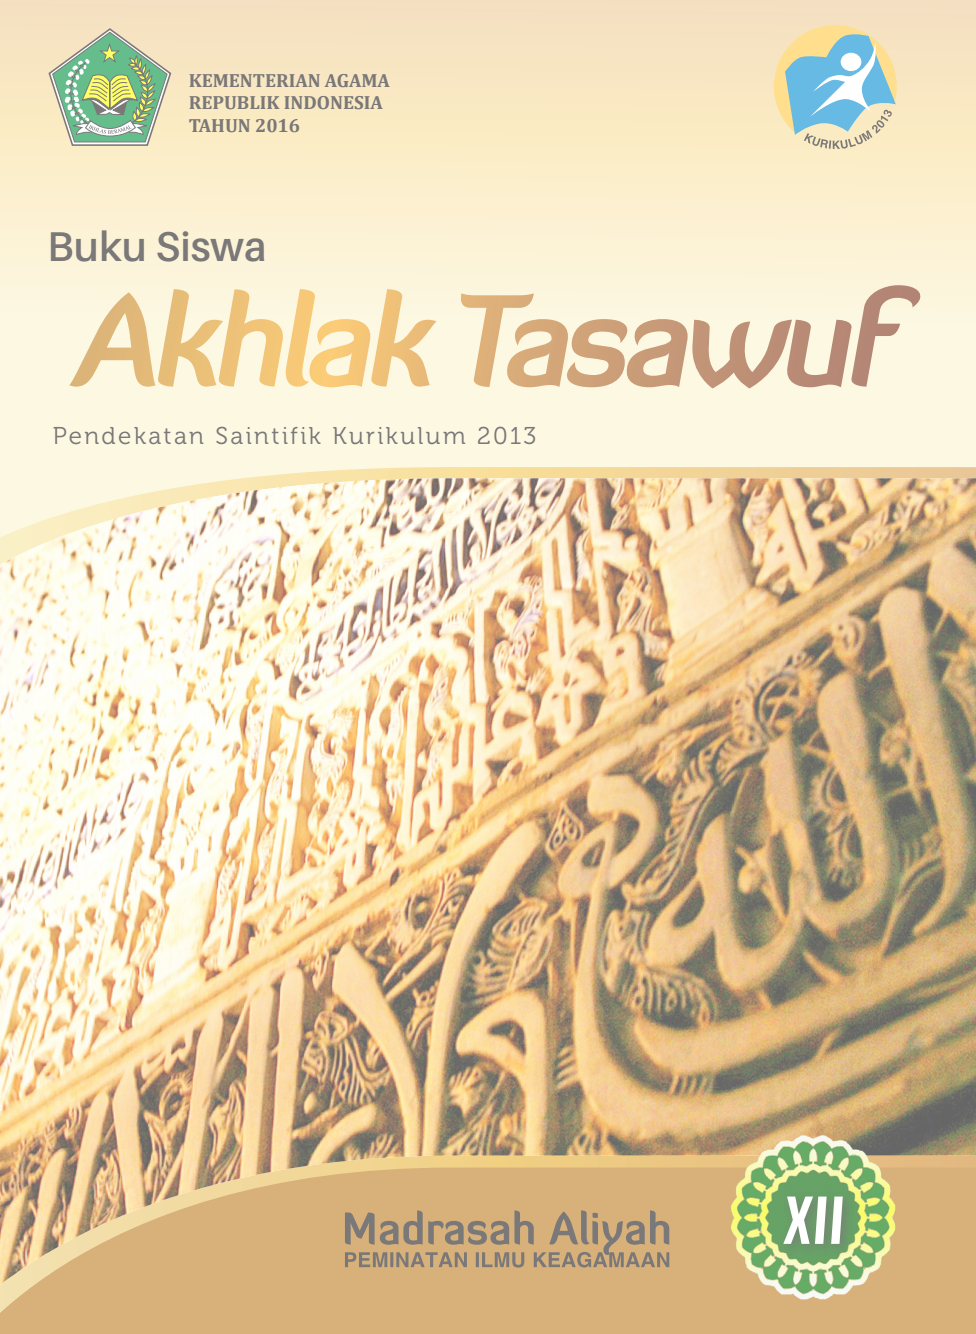 Download Buku Akhlak Tasawuf Gratis Pdf brretpa